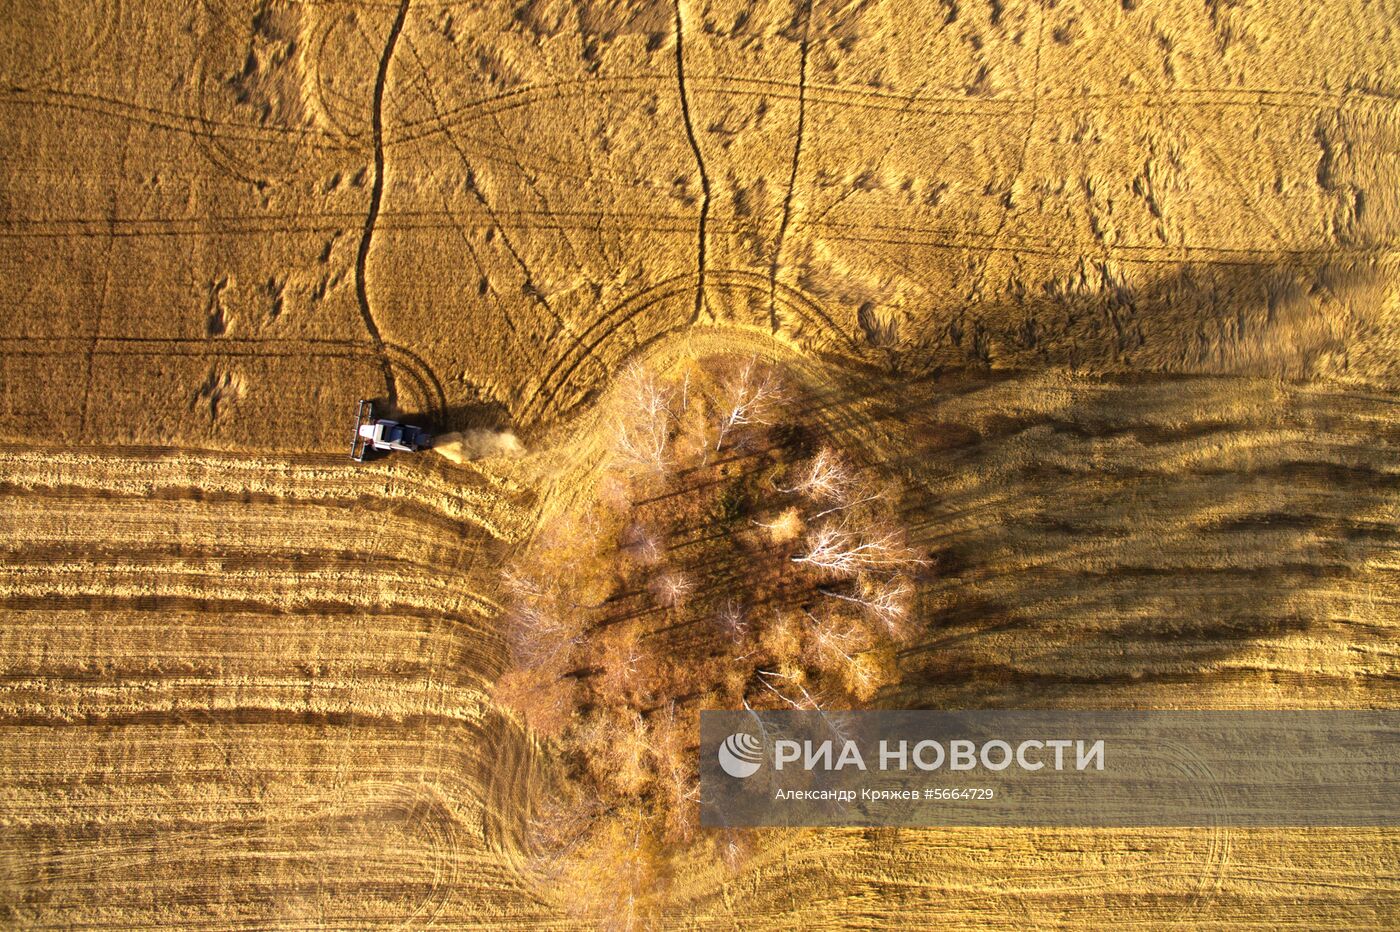 Уборка зерновых в Новосибирской области